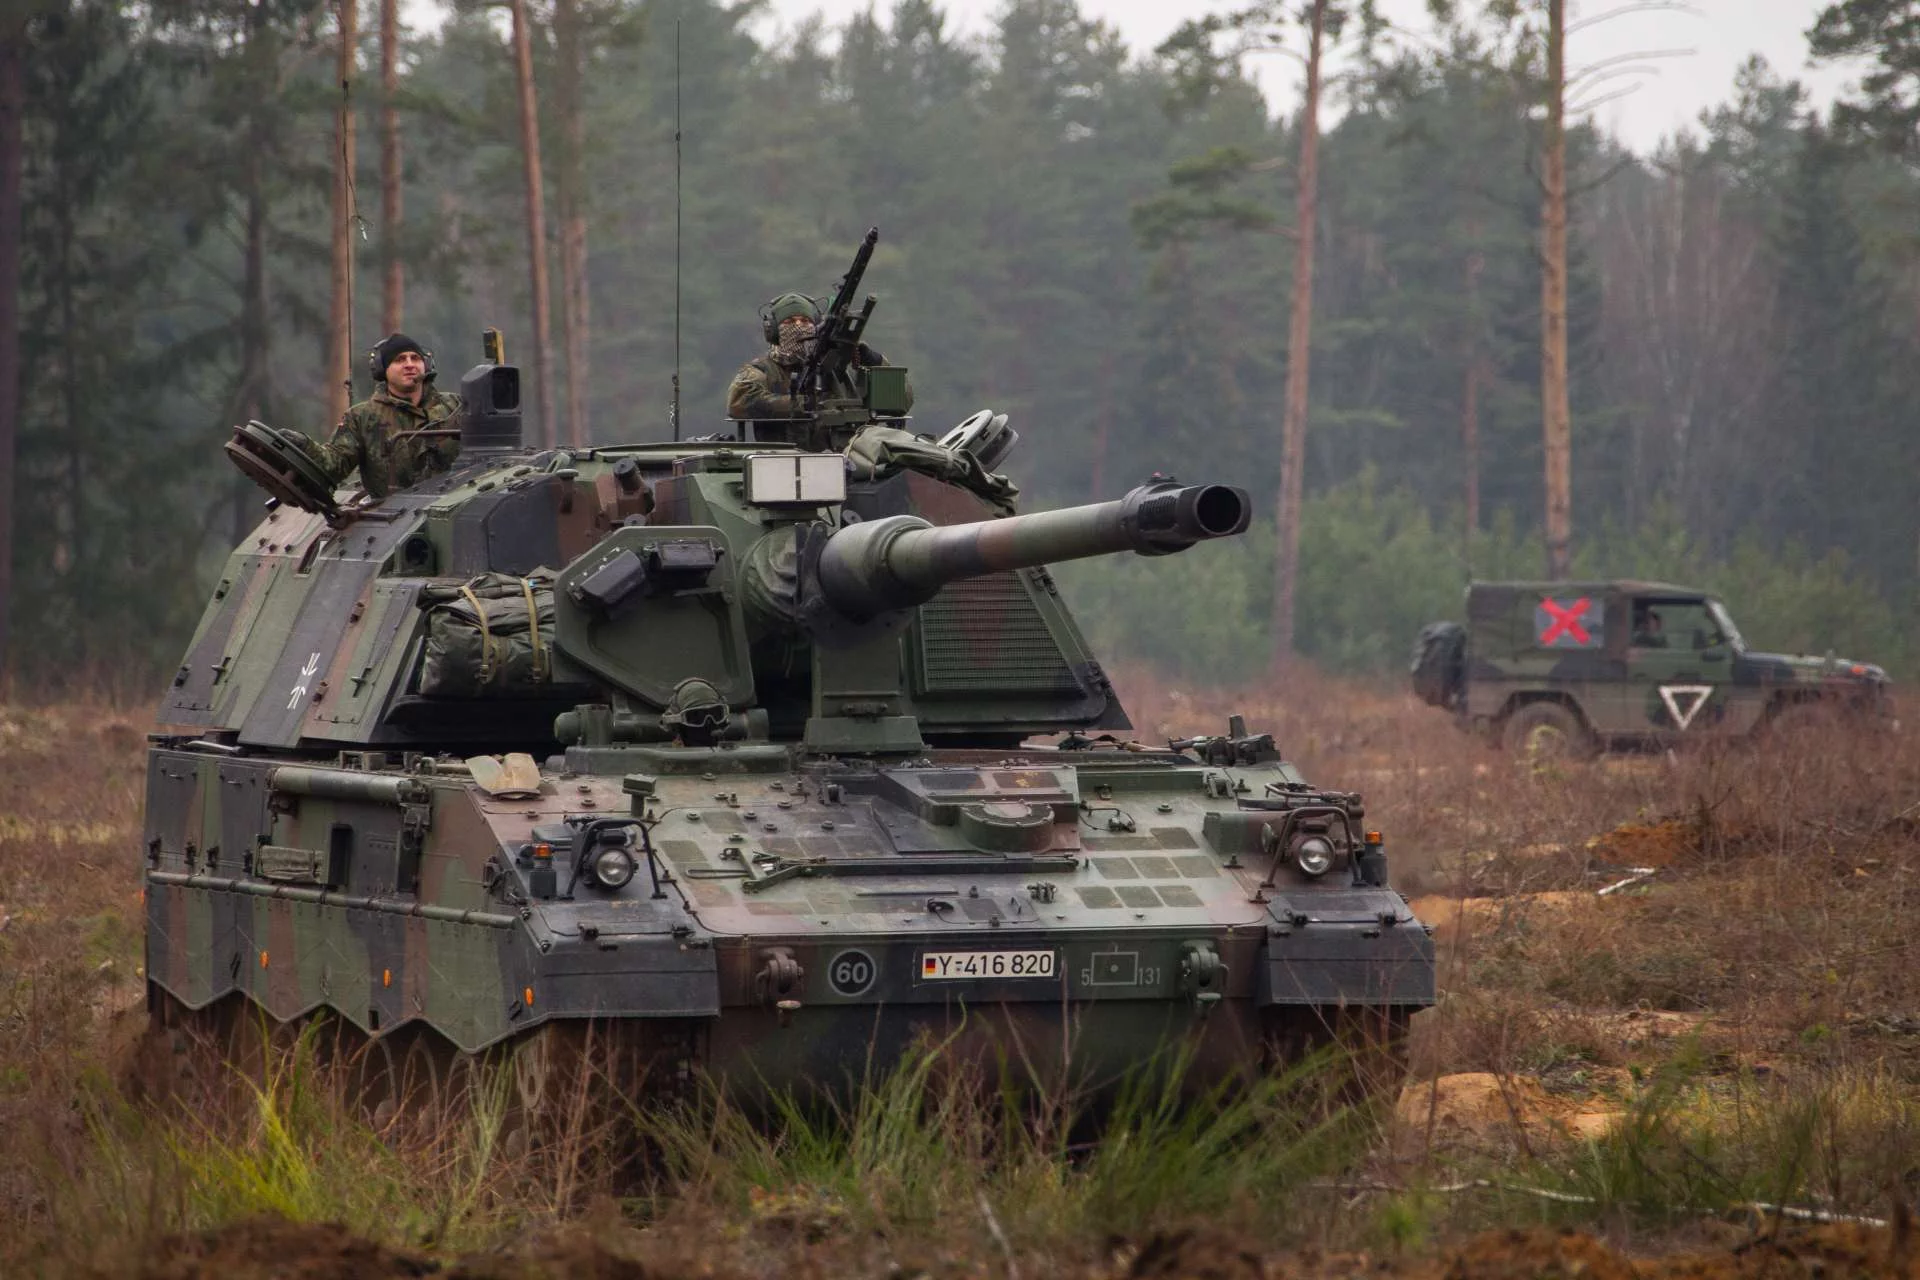 Започаткований наприкінці 1980-х проект PzH 2000 мав на меті створити сучасну артилерійську систему для німецької армії, що призвело до серійного виробництва, починаючи з 1996 року. (Джерело зображення: Міноборони Німеччини)